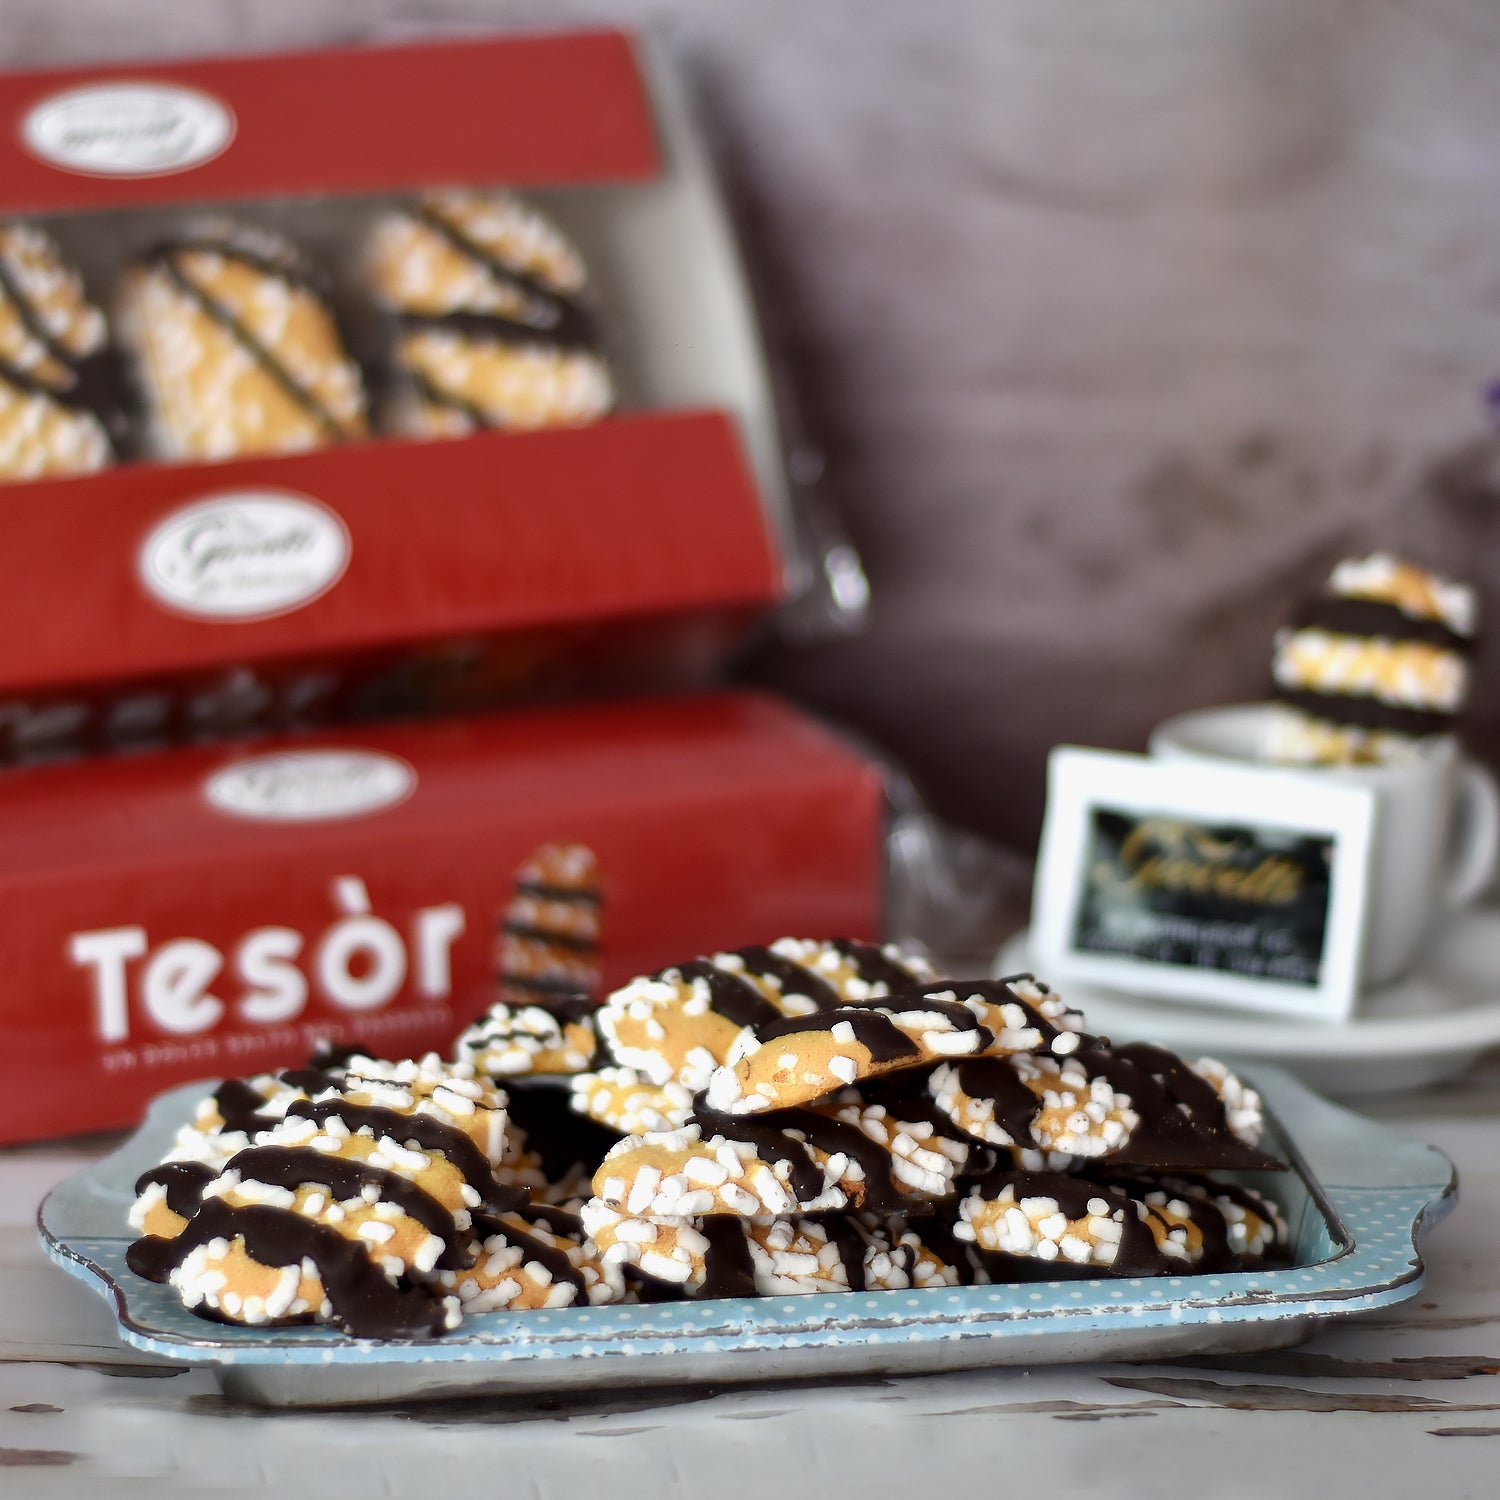 Tesòr - Biscotti Artigianali con Granella di Zucchero e Cioccolato - Giovetti.it - Shop online 